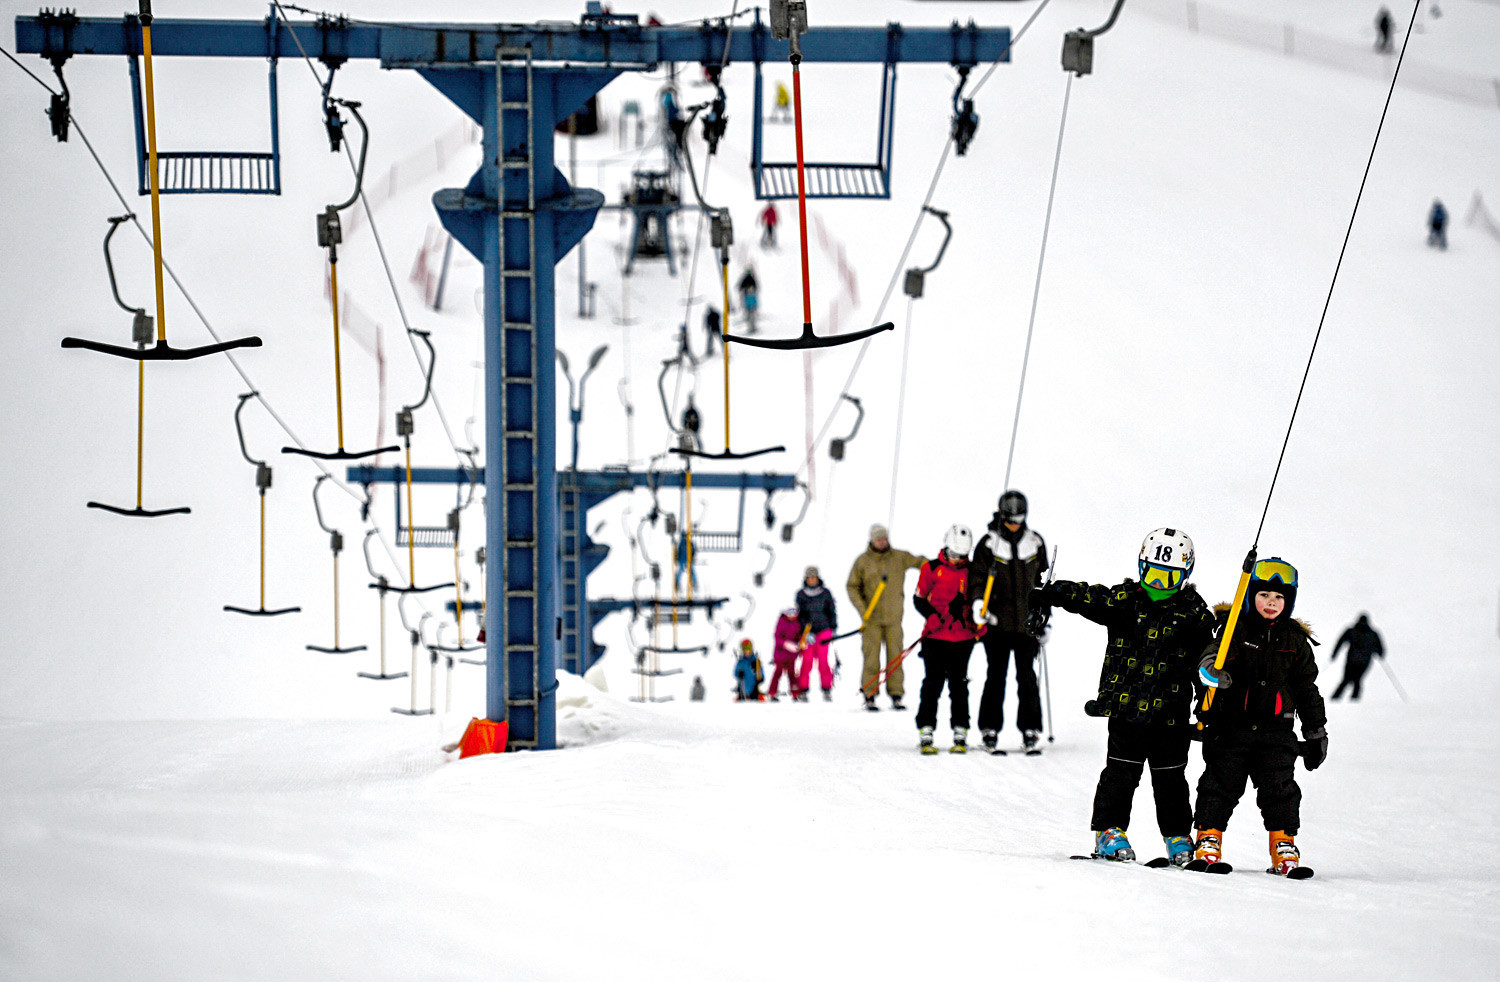 Anak-anak menggunakan lift ski di Taman Olahraga Volen (Yahroma) dekat Moskow.